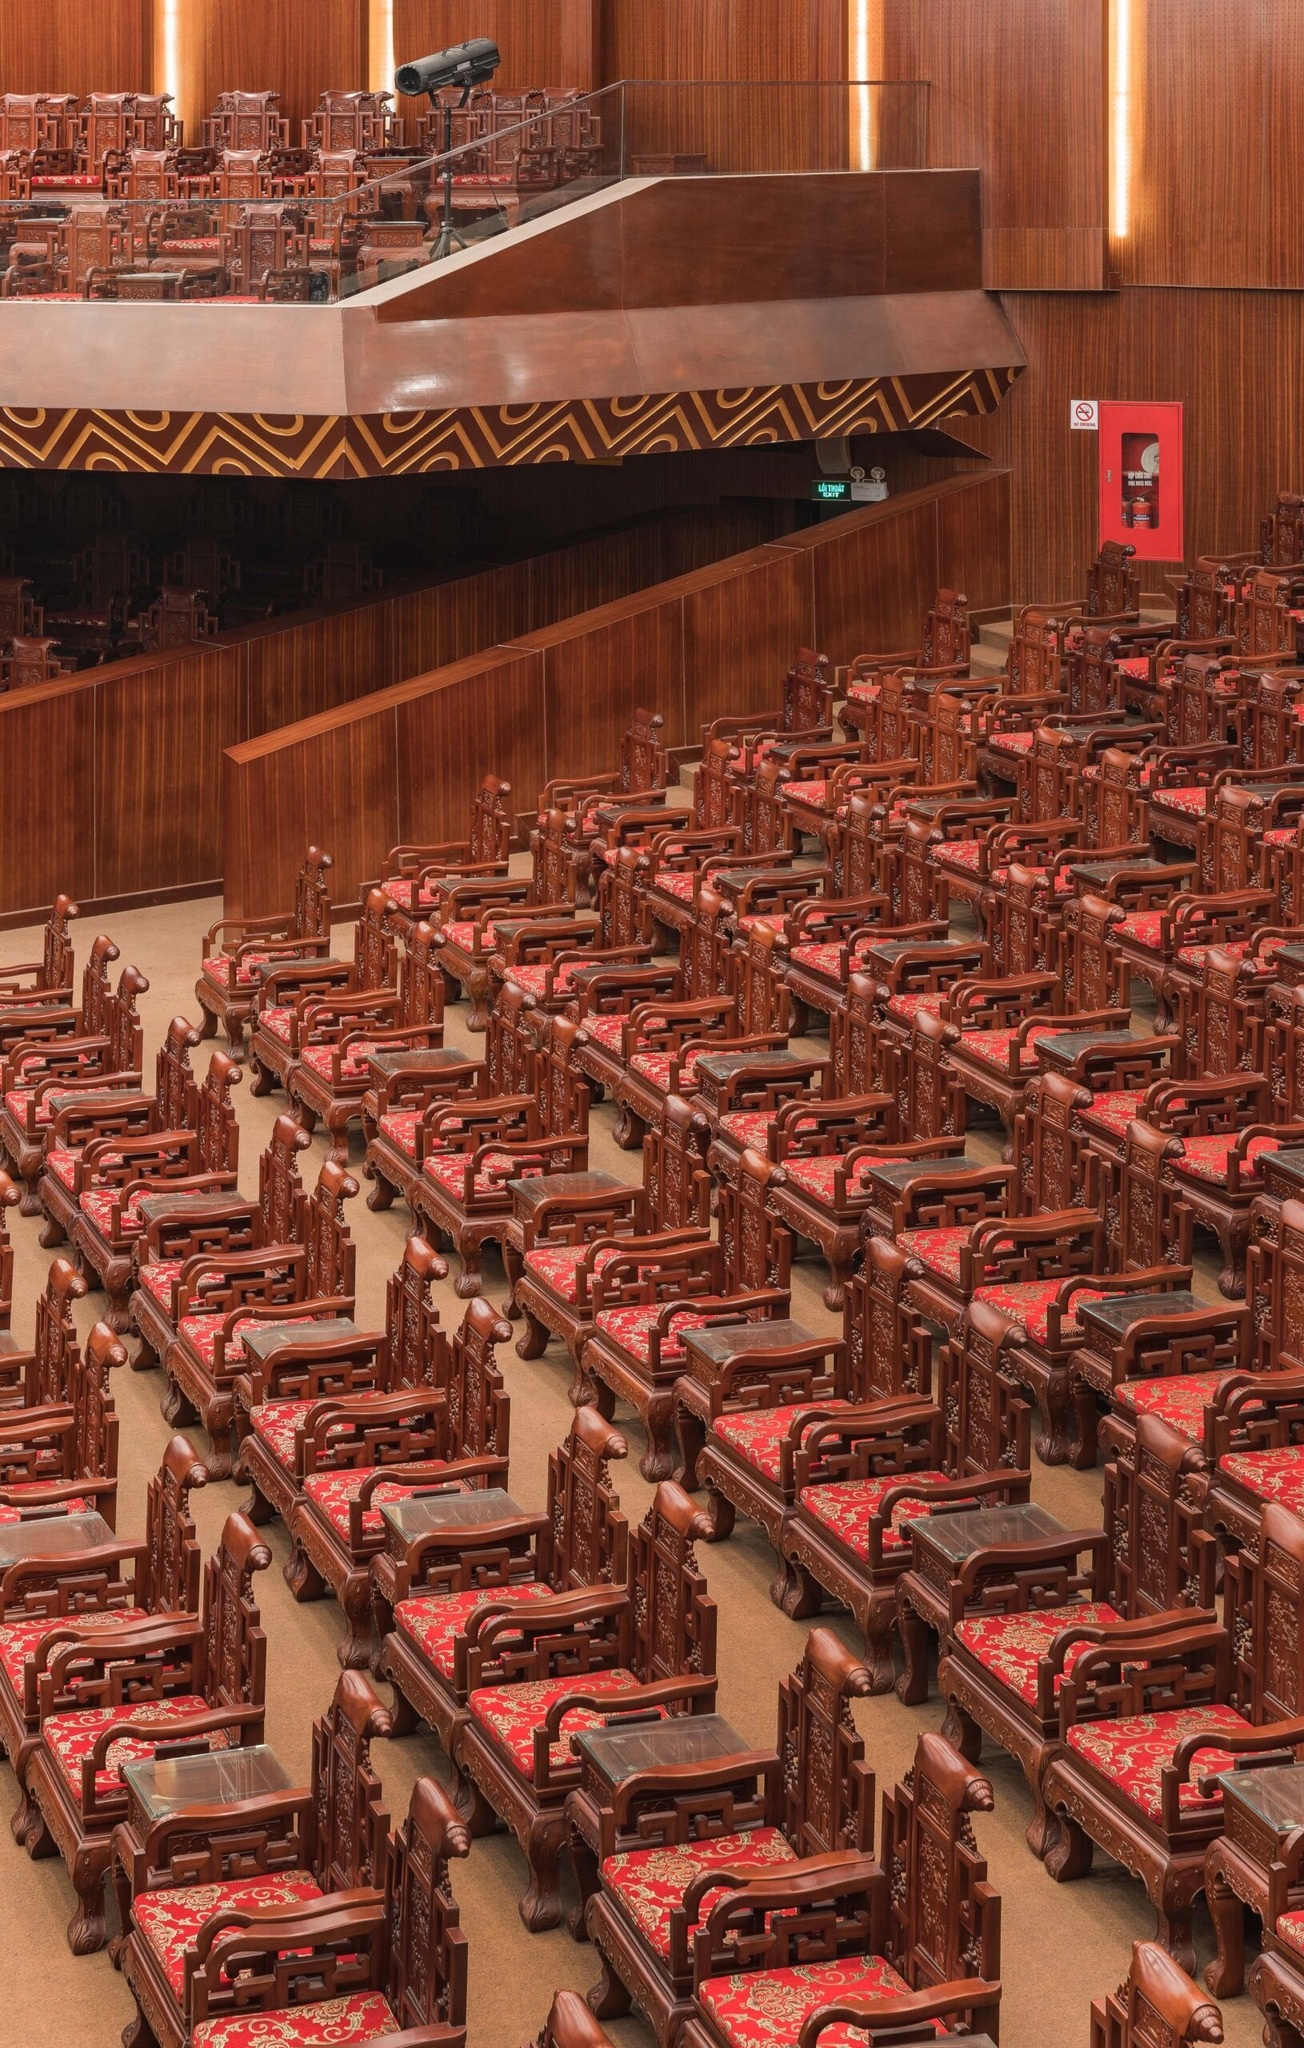 Hàng ghế gỗ Đồng Kỵ trong Nhà hát Dân ca Quan họ Bắc Ninh gây tranh cãi - 1